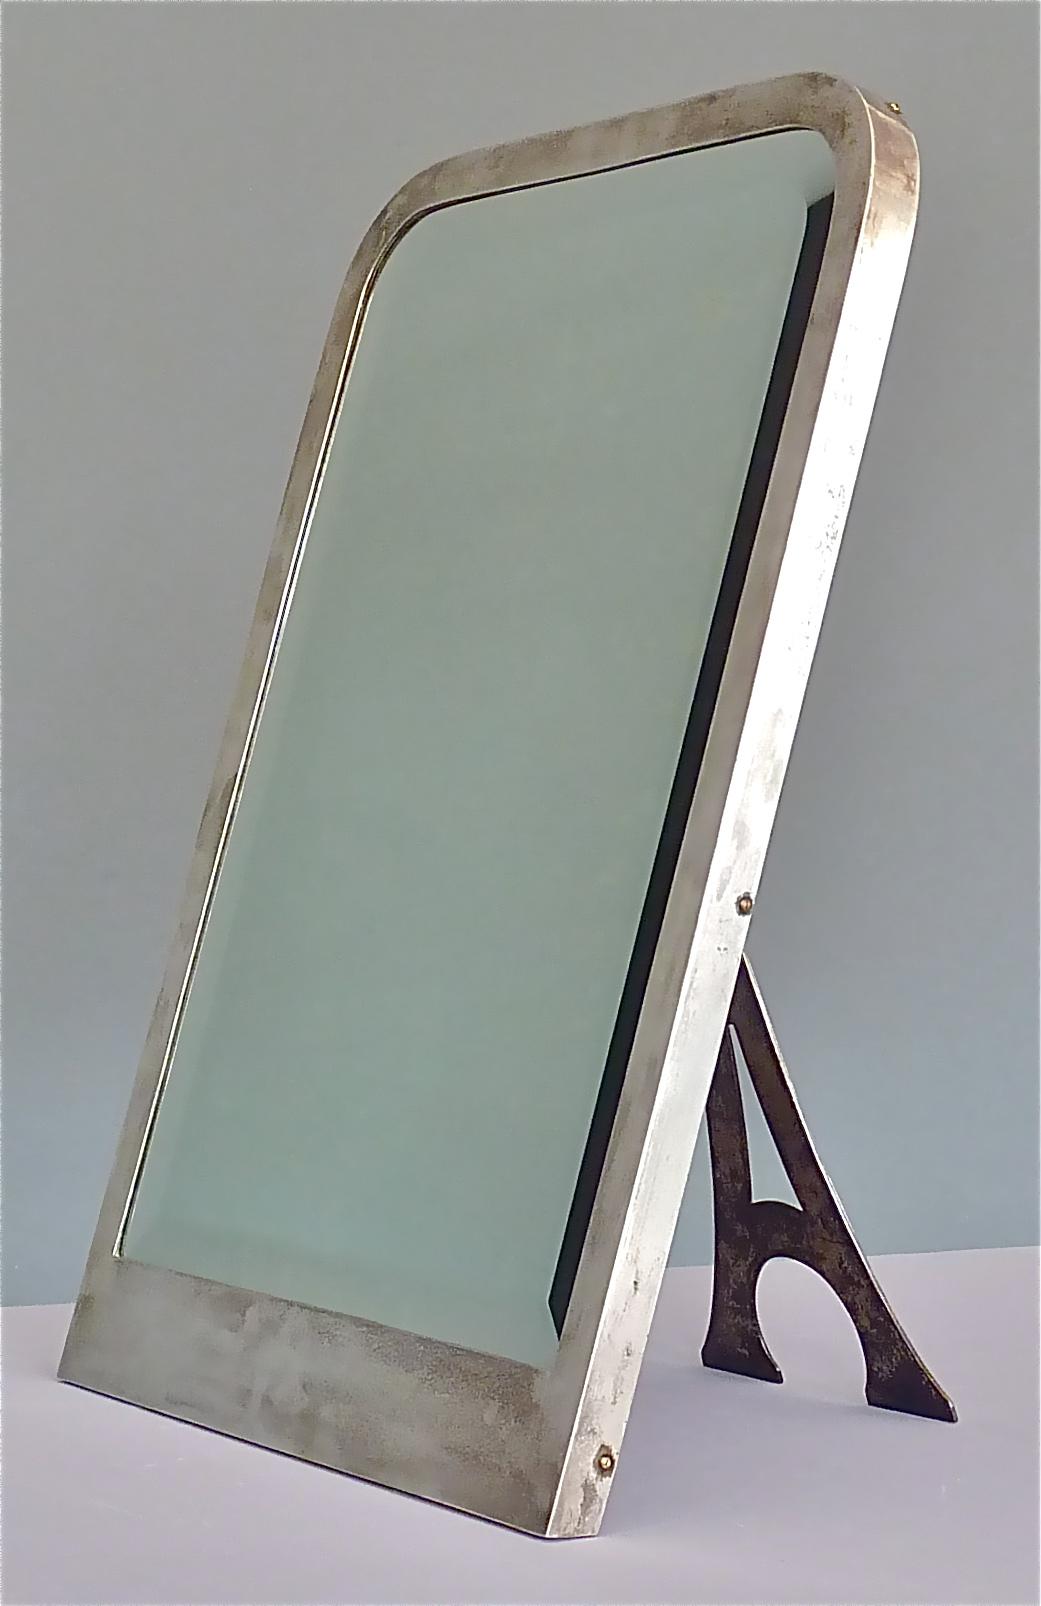 Large Arthur Krupp Berndorf Table Mirror Faceted Glass Silvered Jugendstil 1905 For Sale 3